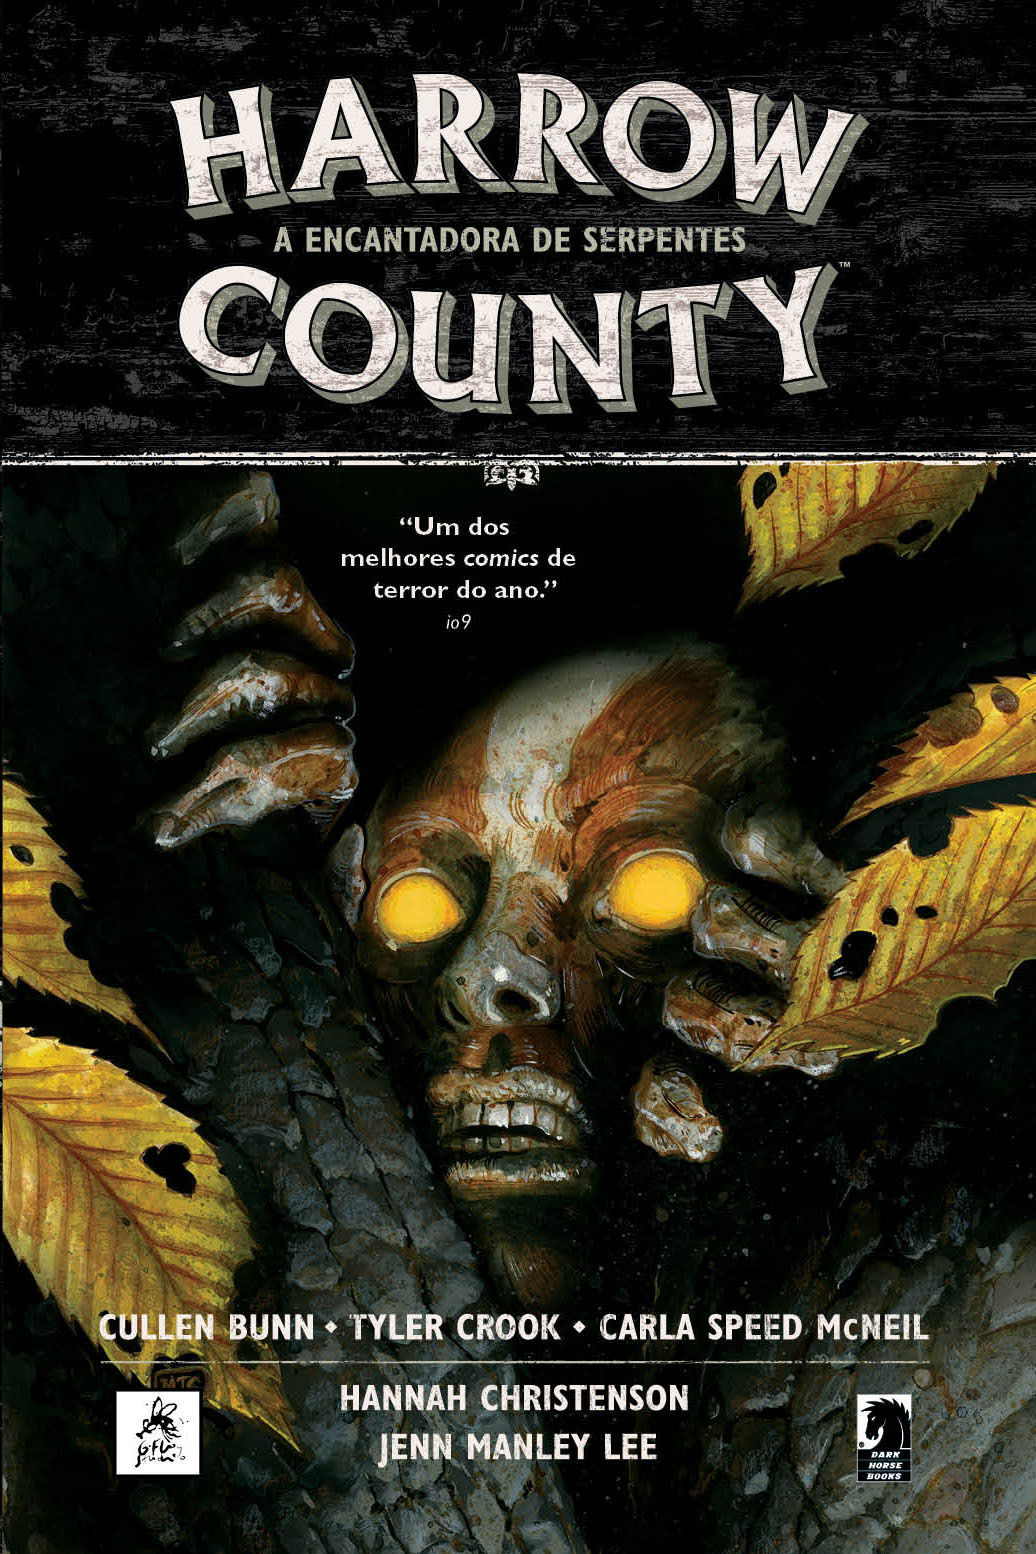 HARROW COUNTY volume 3: A Encantadora de Serpentes